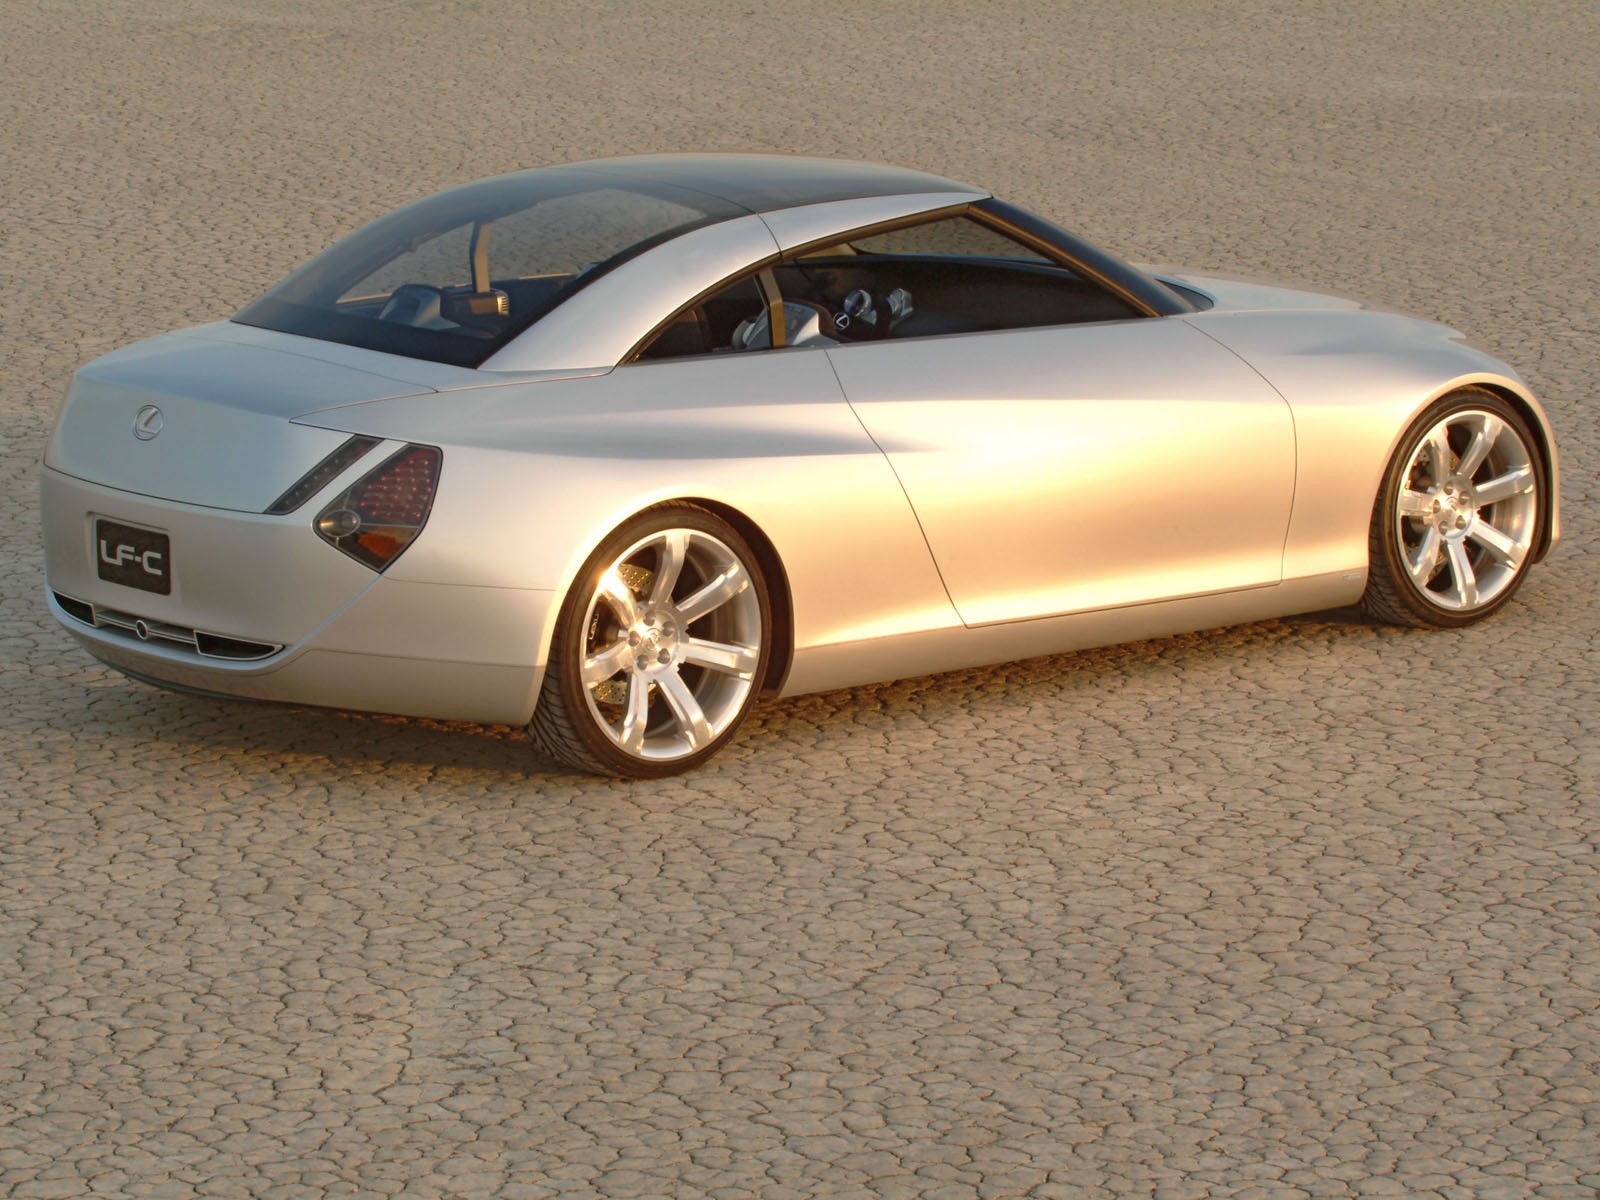 Lexus LF-C Concept (2004) - Old Concept Cars